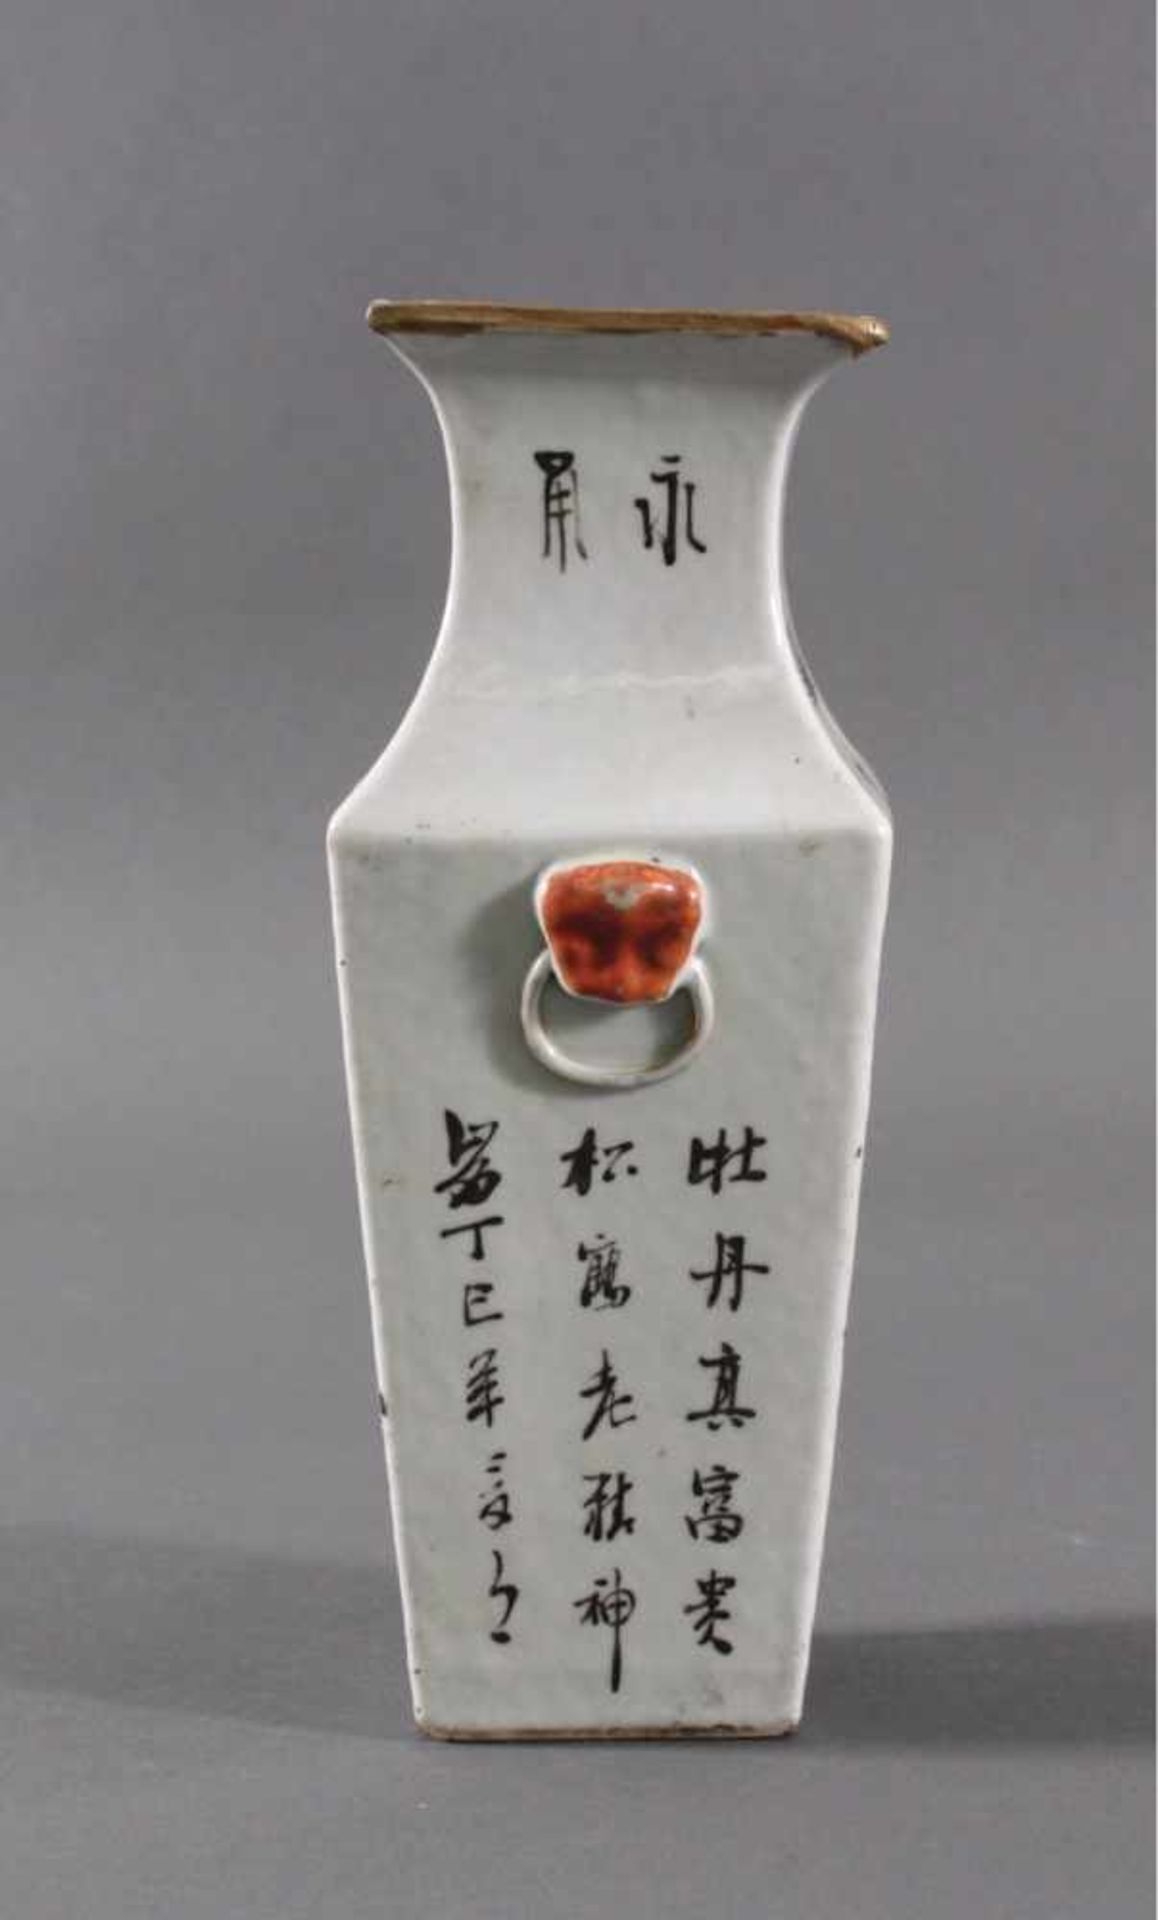 Vase - China 20. Jh.Porzellan, Aufglasurmalerei von Pflanzen- und Vogeldekor.Kalligraphie, - Bild 2 aus 5